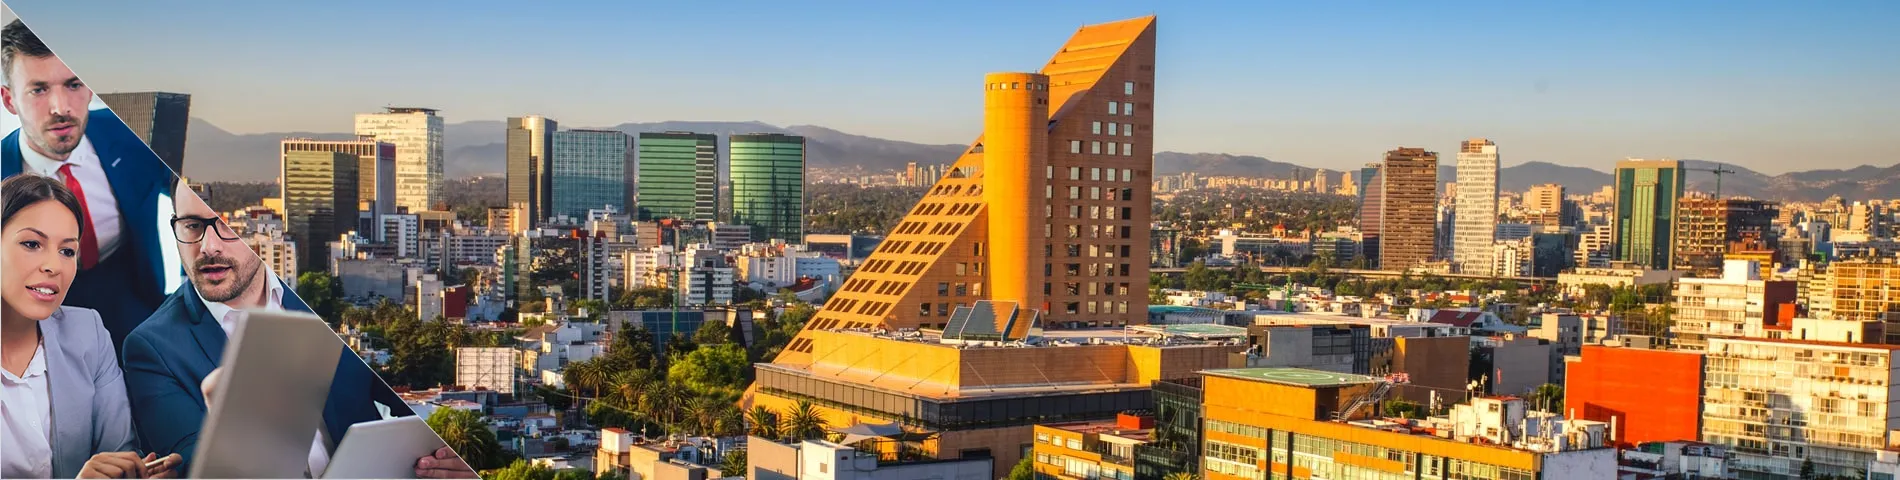 Mexico City - Standardní a obchodní kombi skupina